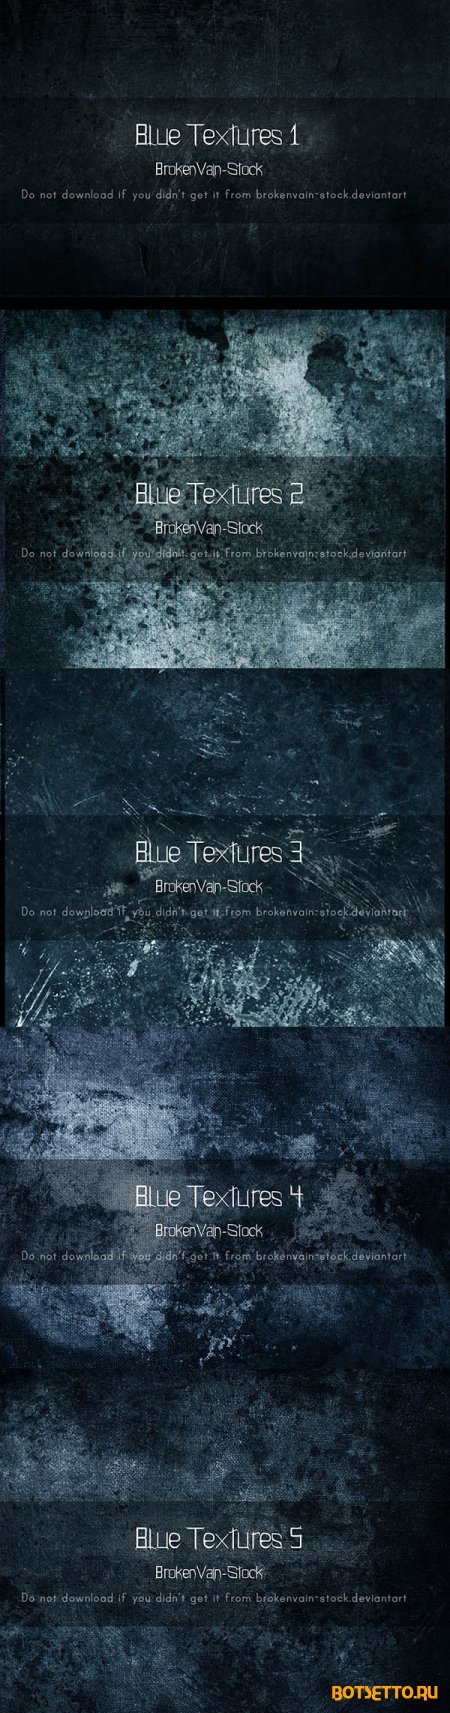 BrokenVain Stock - Blue Textures